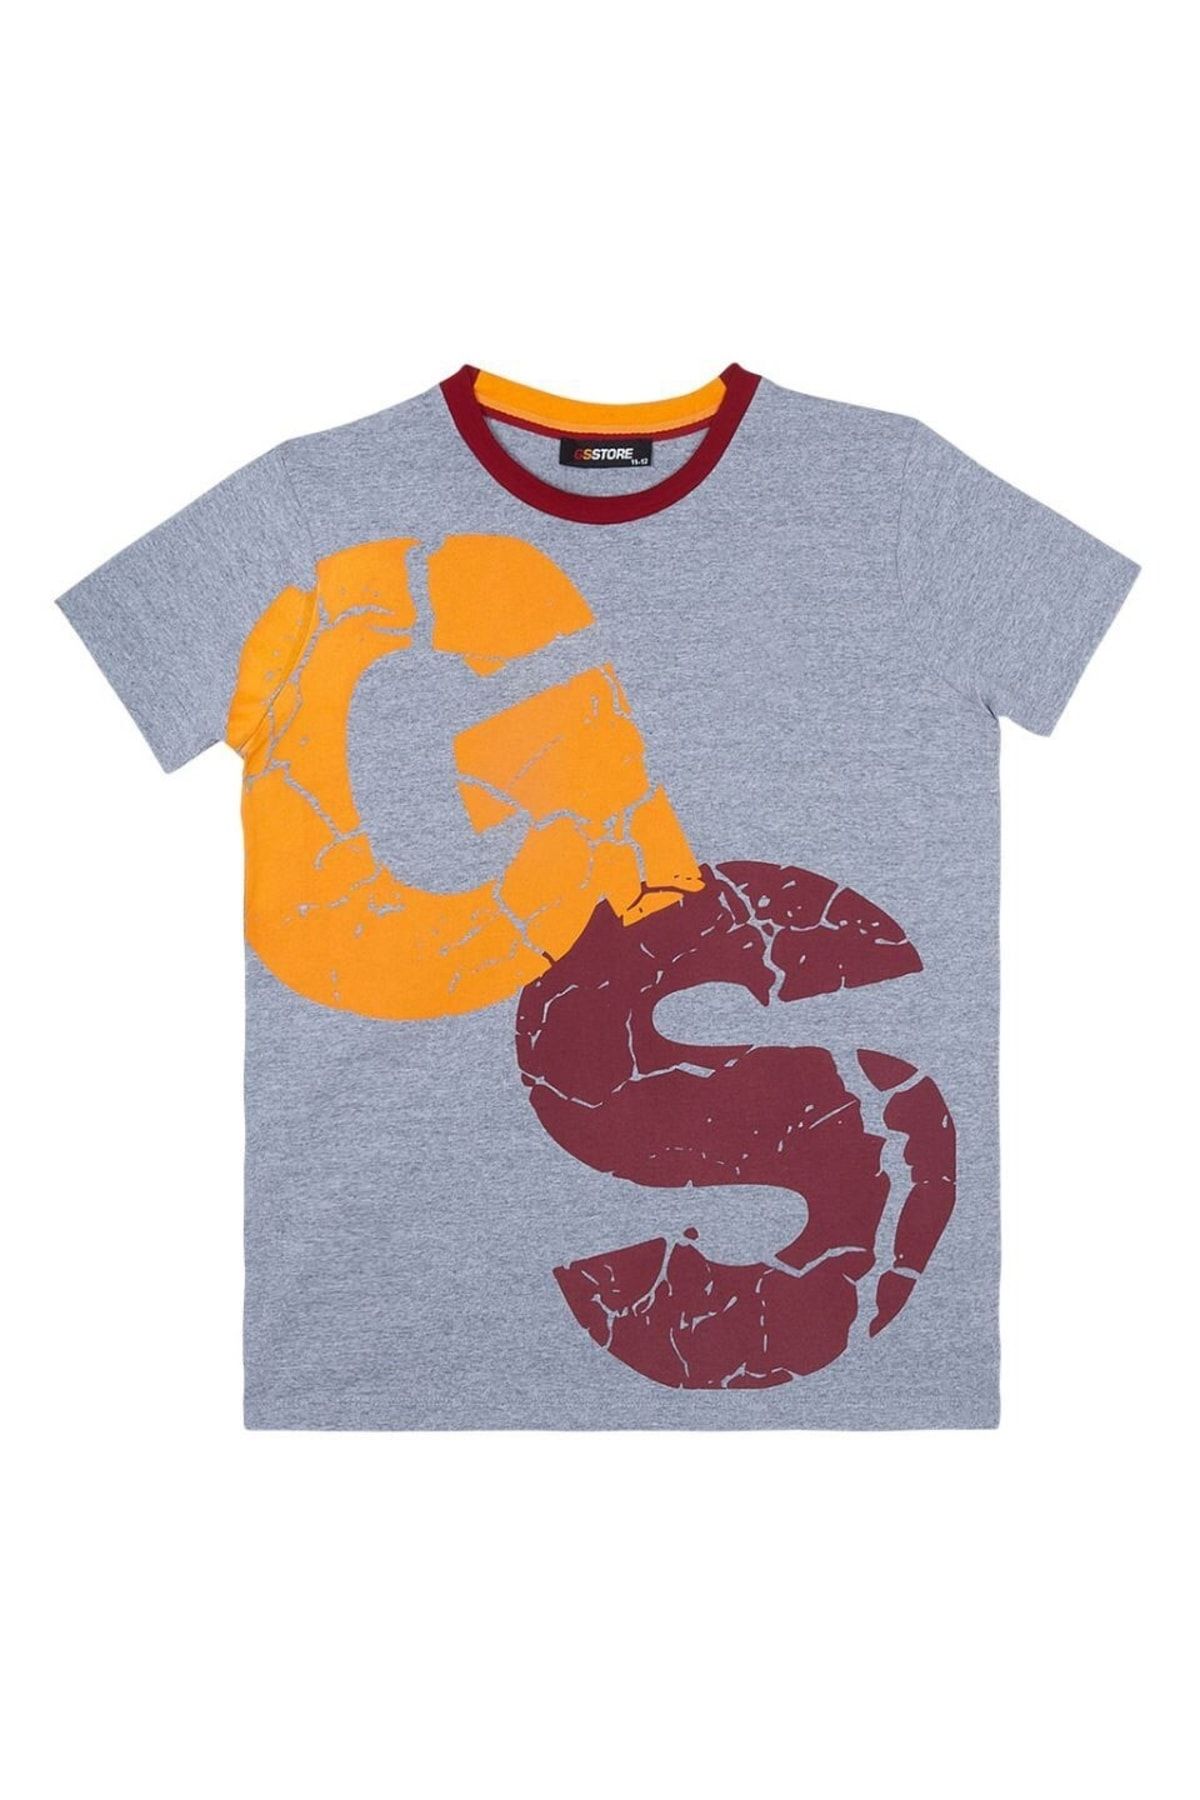 Galatasaray Galatasaray Çocuk Lisanslı Armalı Gri Tshirt C13708